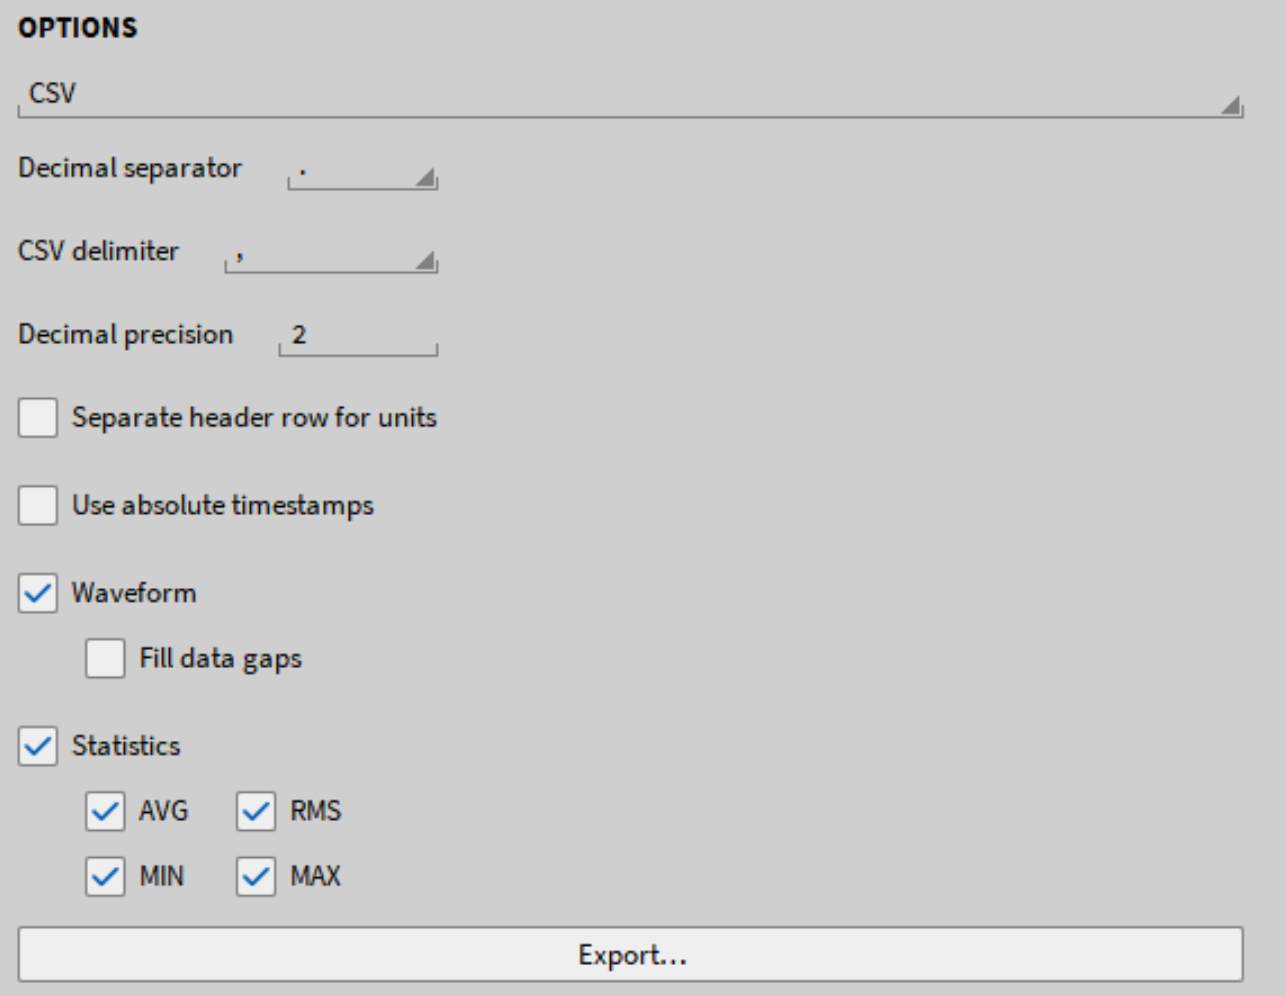 Exportoptionen für eine \*.csv-Datei